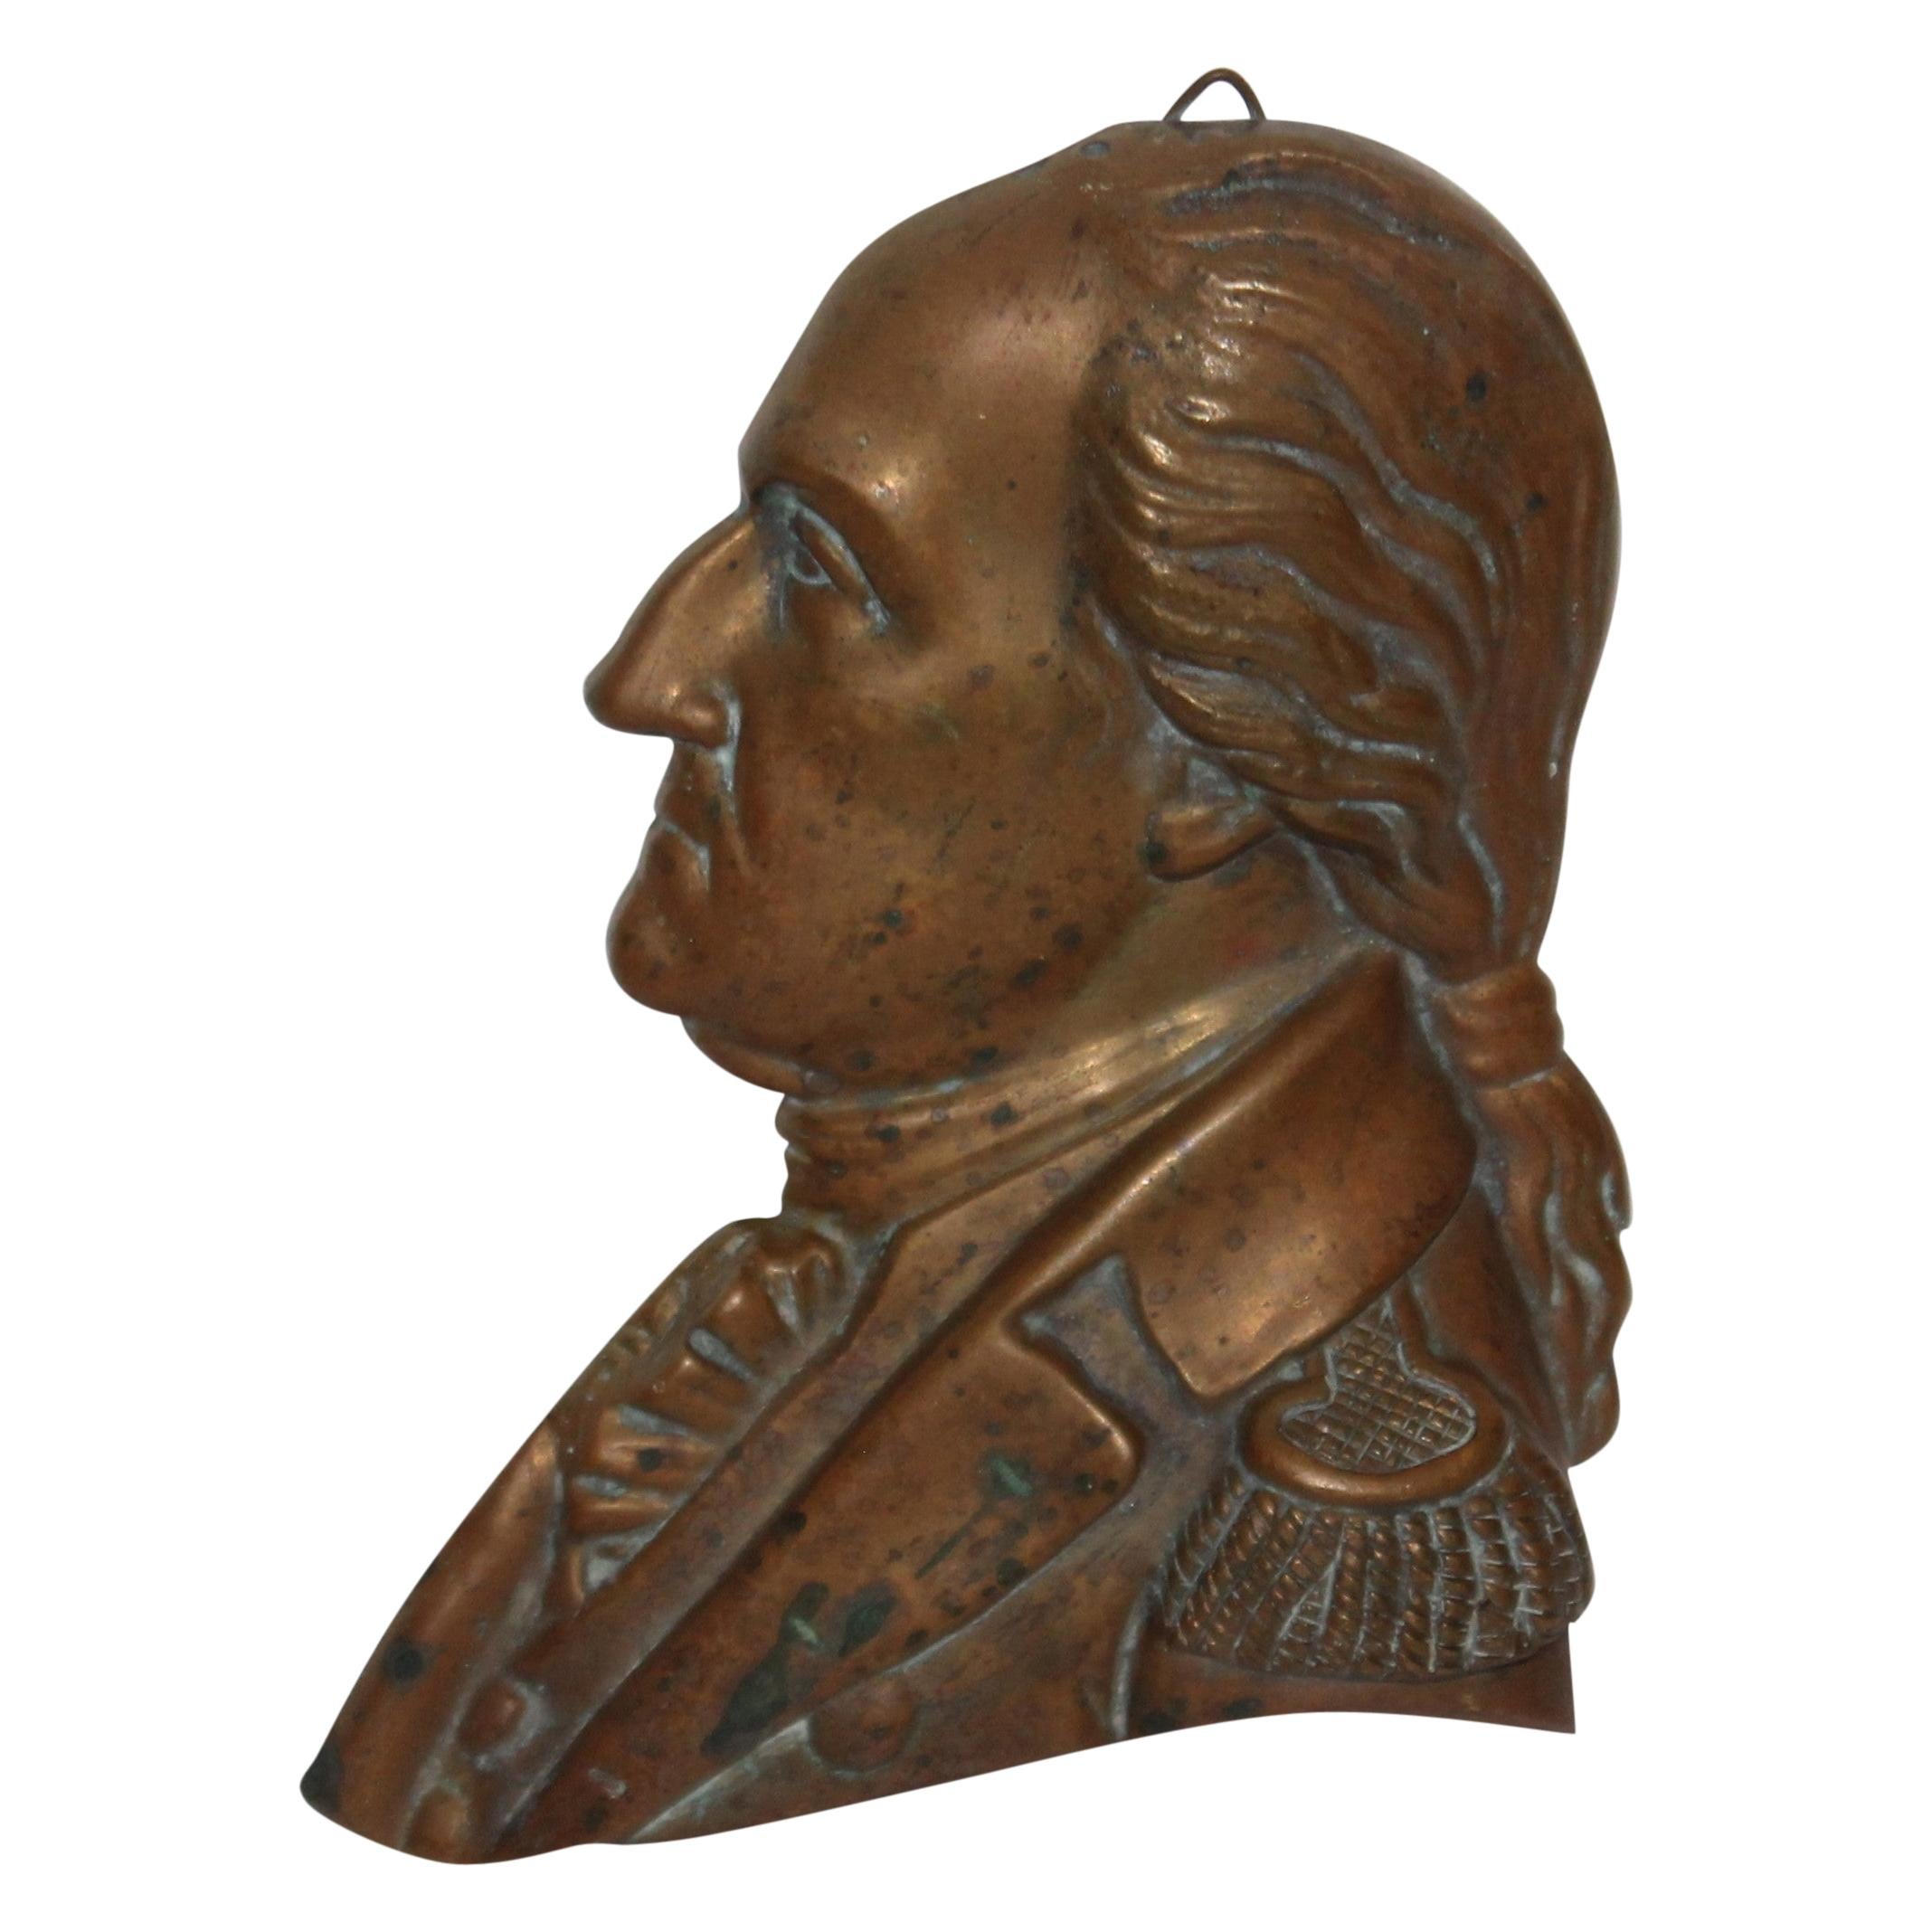 Bronzeplakette von George Washington aus dem späten 19. Jahrhundert